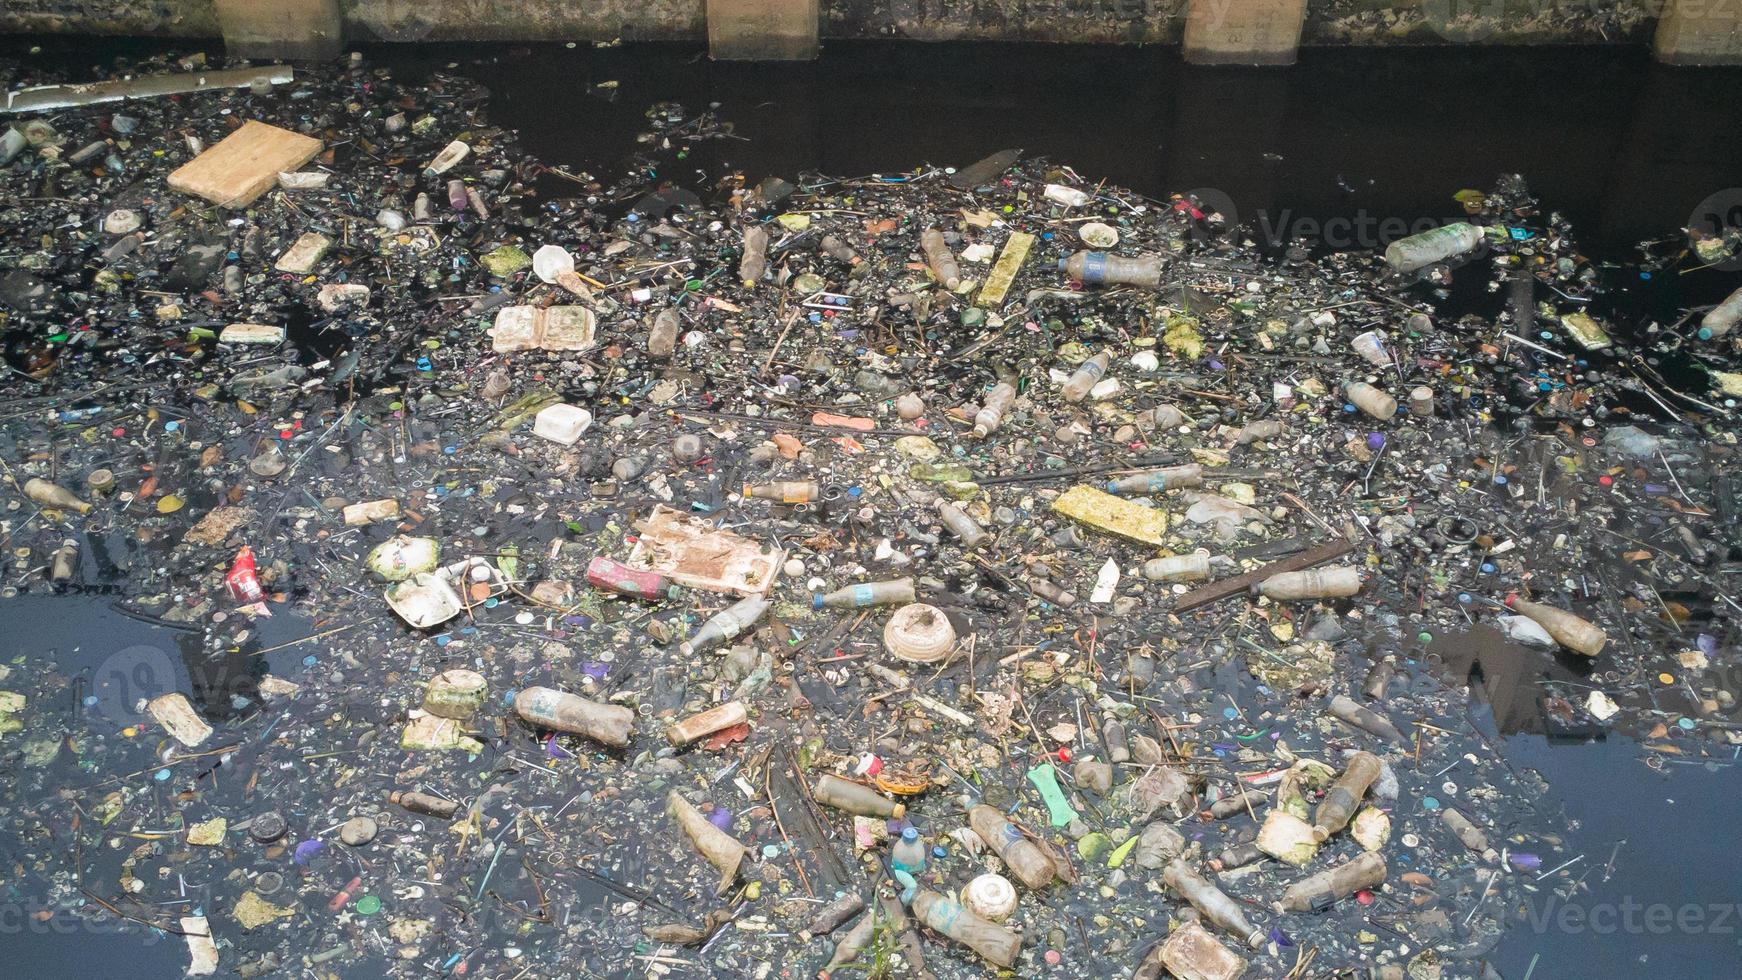 watervervuiling veroorzaakt vuil afval in het kanaal. foto